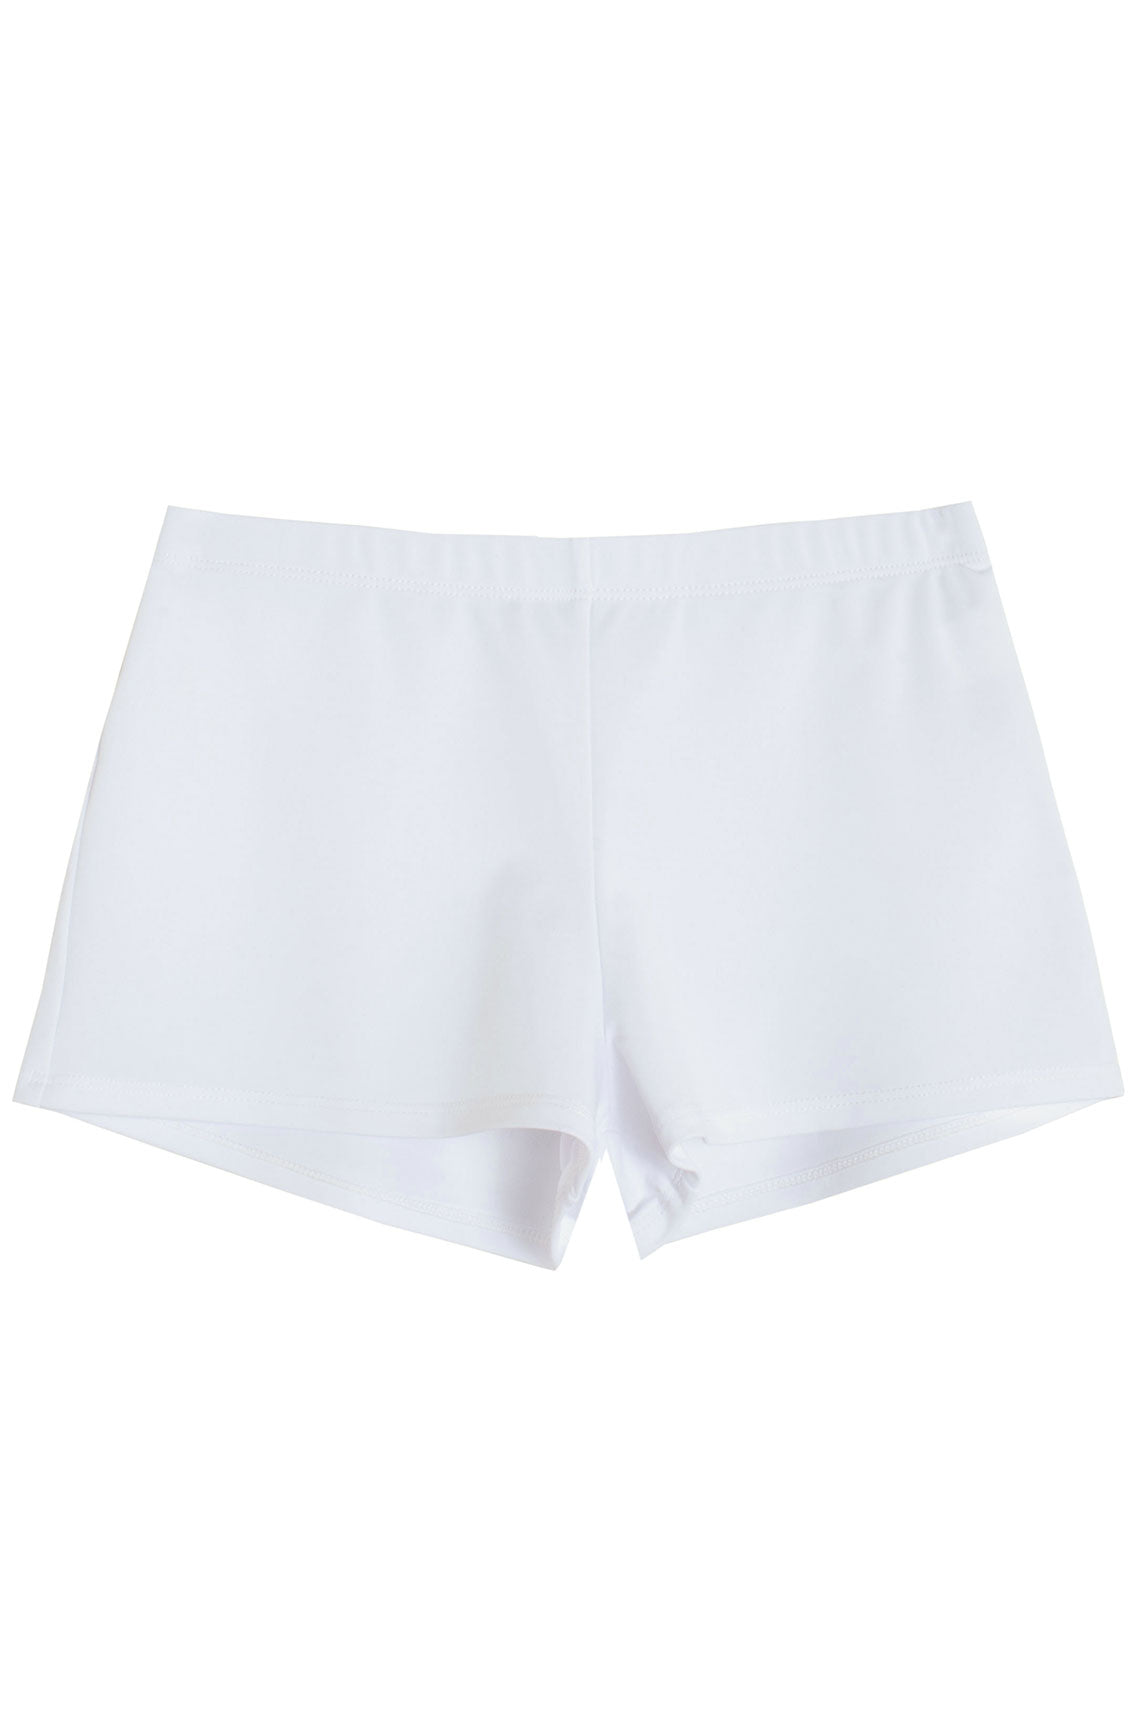 White Eldorado Shorts